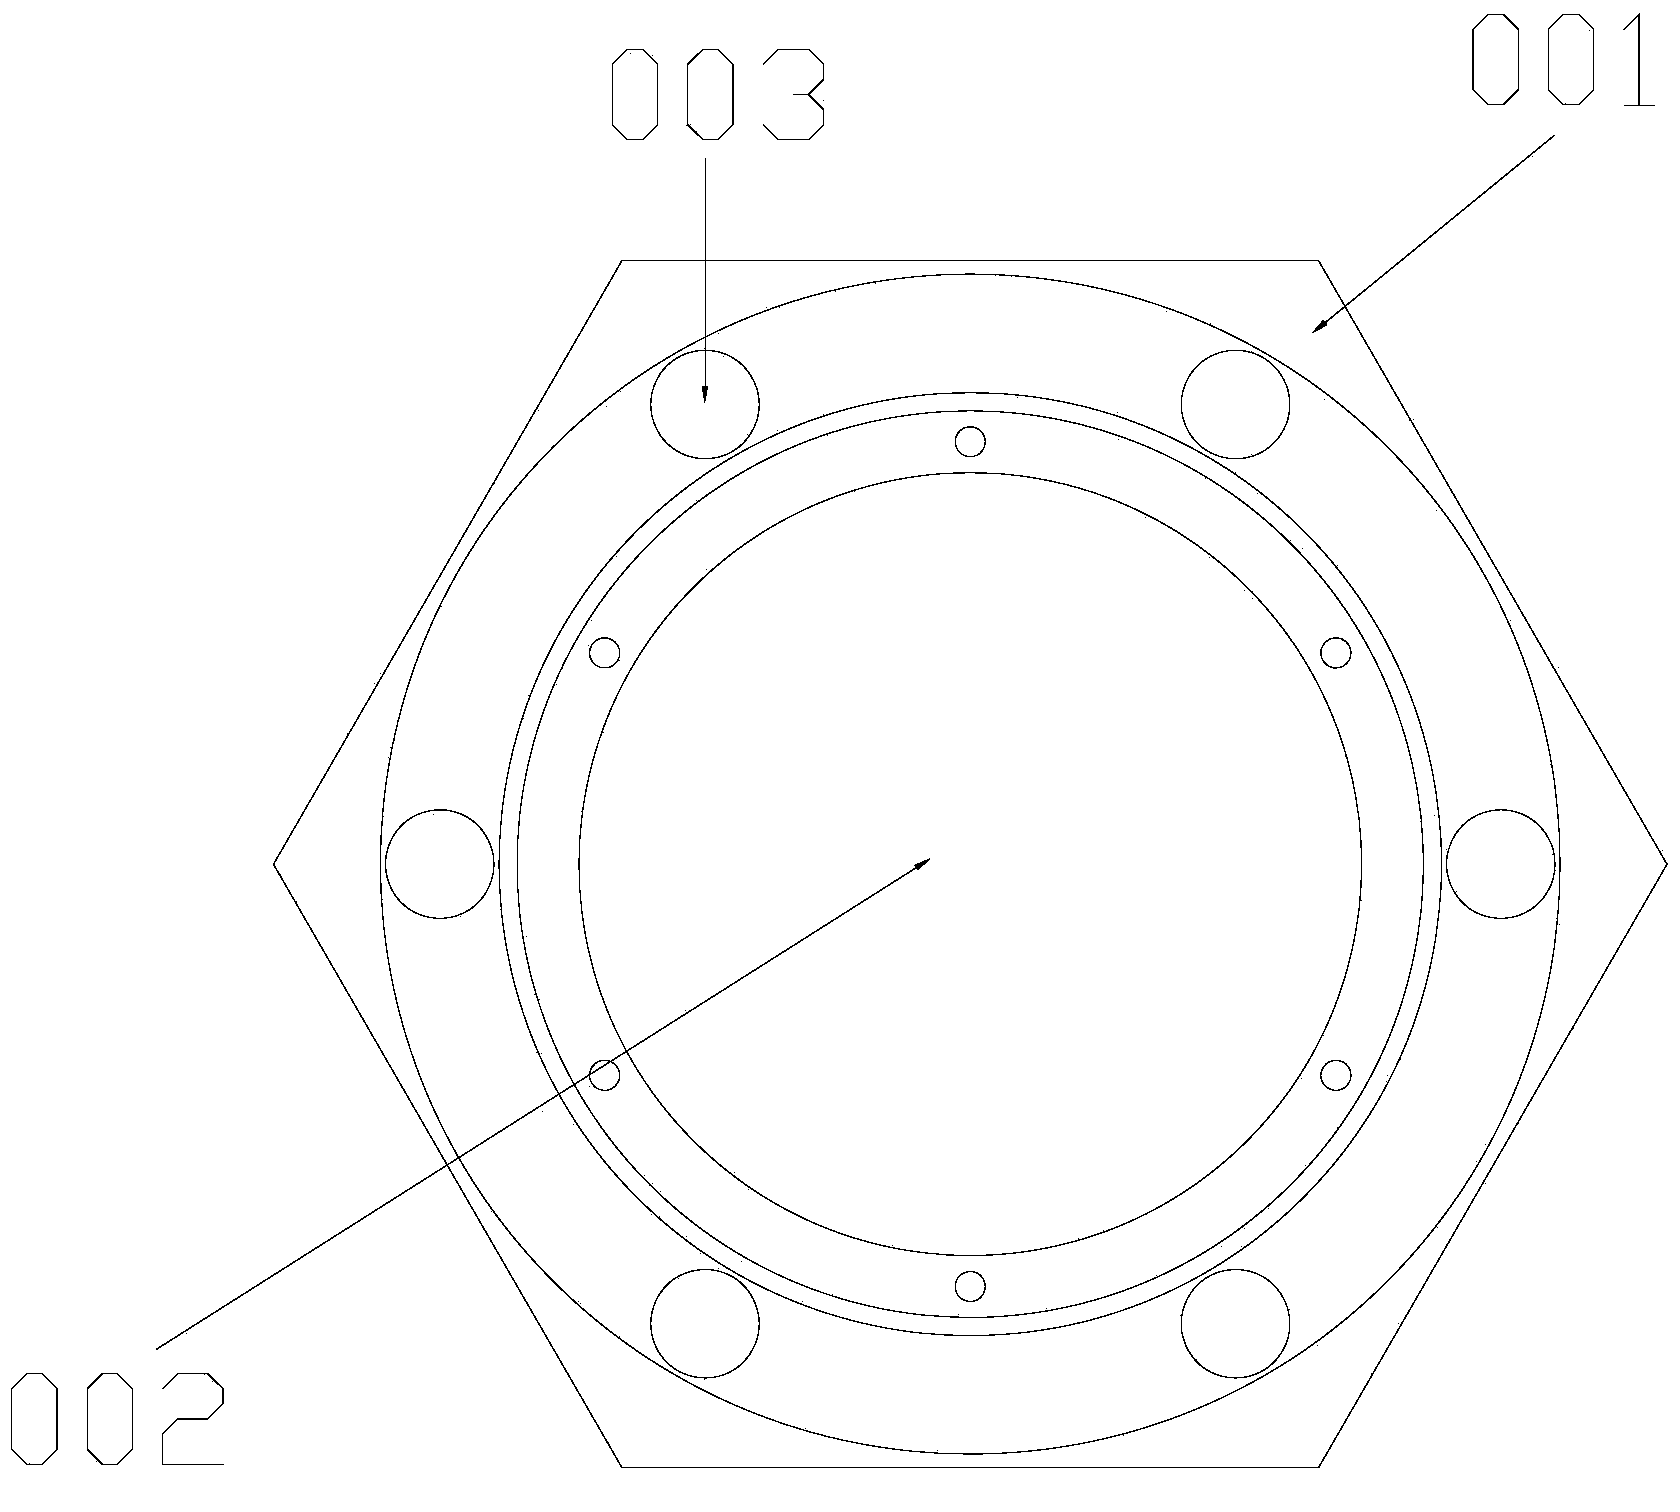 Loudspeaker structure based on ring shaft phase-reversing tube application